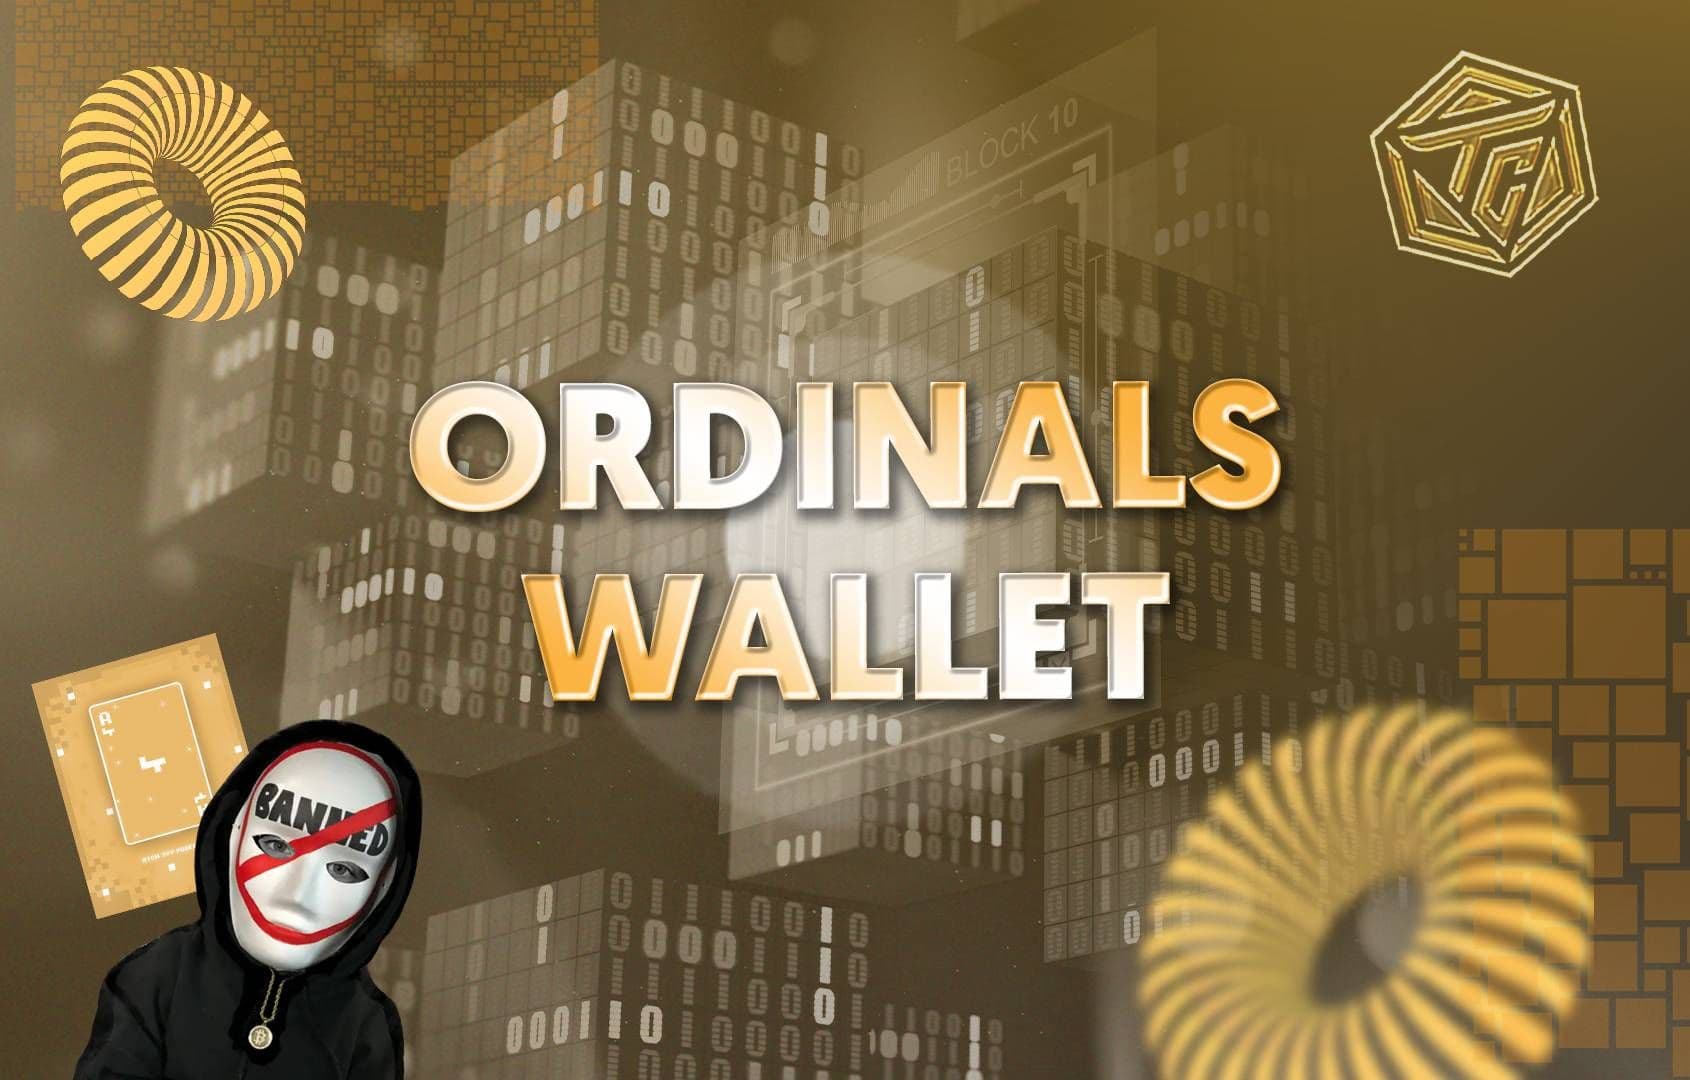 Ordinals Wallet là gì? Mảnh ghép quan trọng cho sự bùng nổ của Bitcoin Ordinals